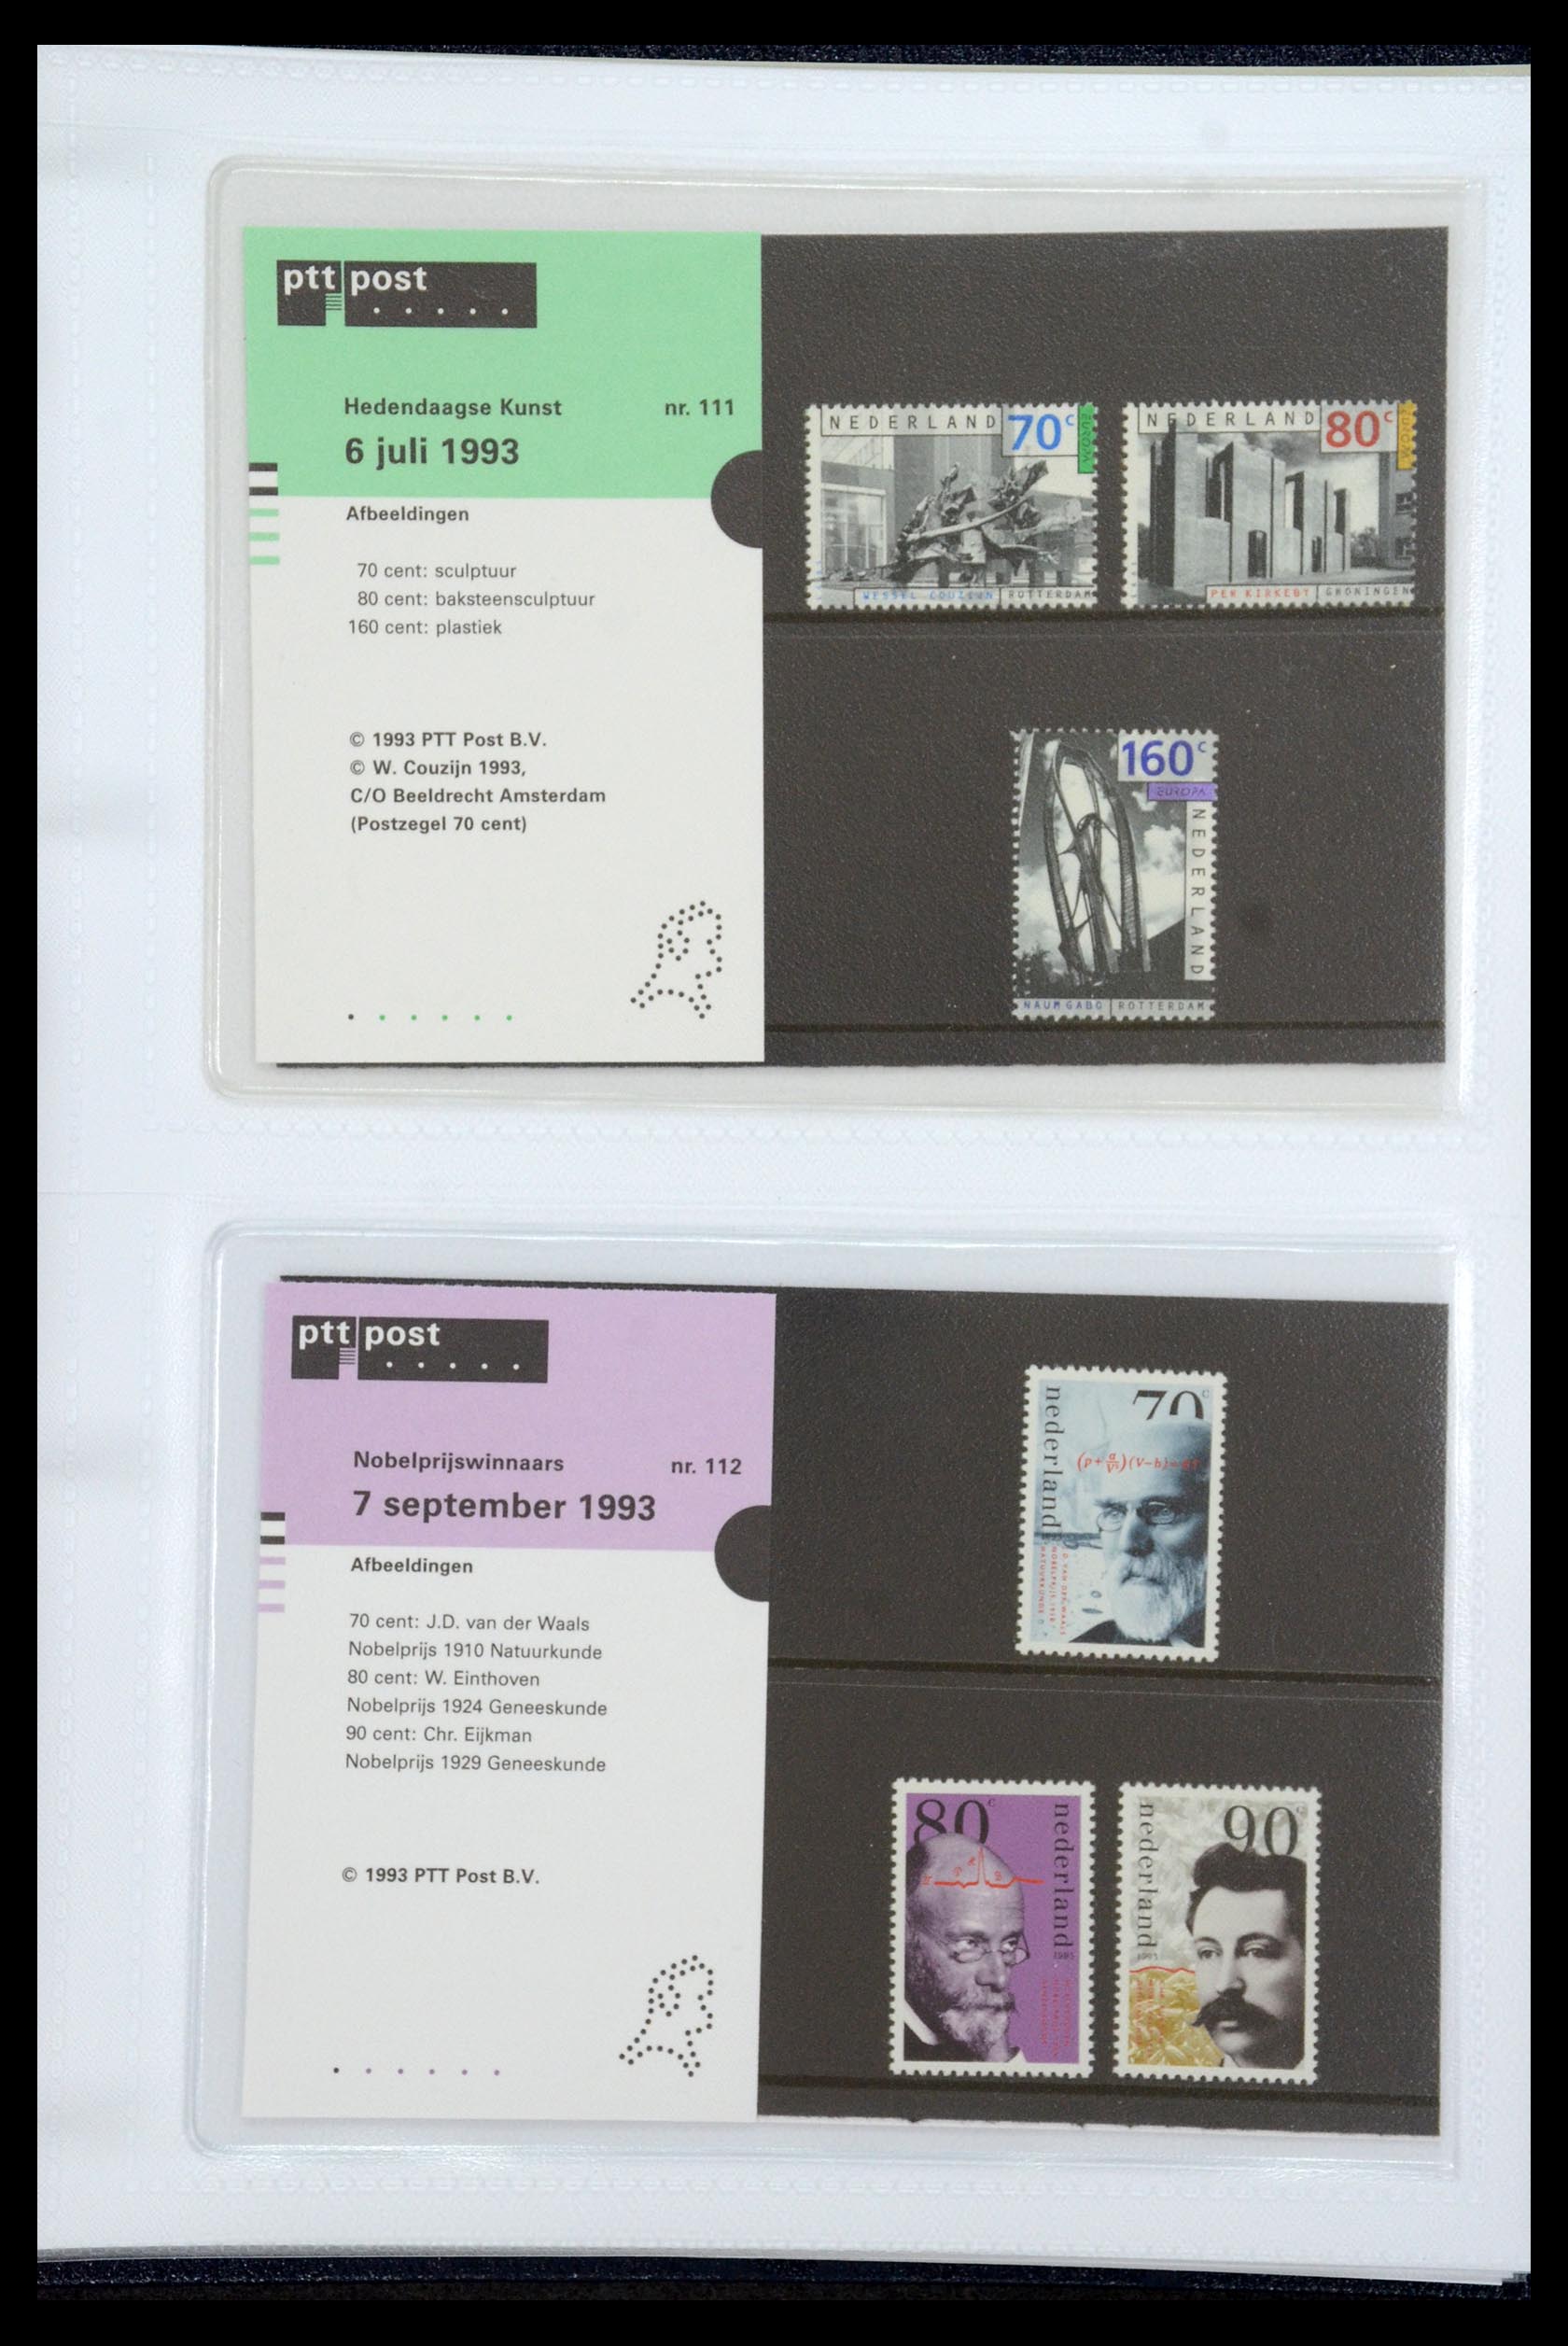 35947 058 - Stamp Collection 35947 Netherlands PTT presentation packs 1982-2019!